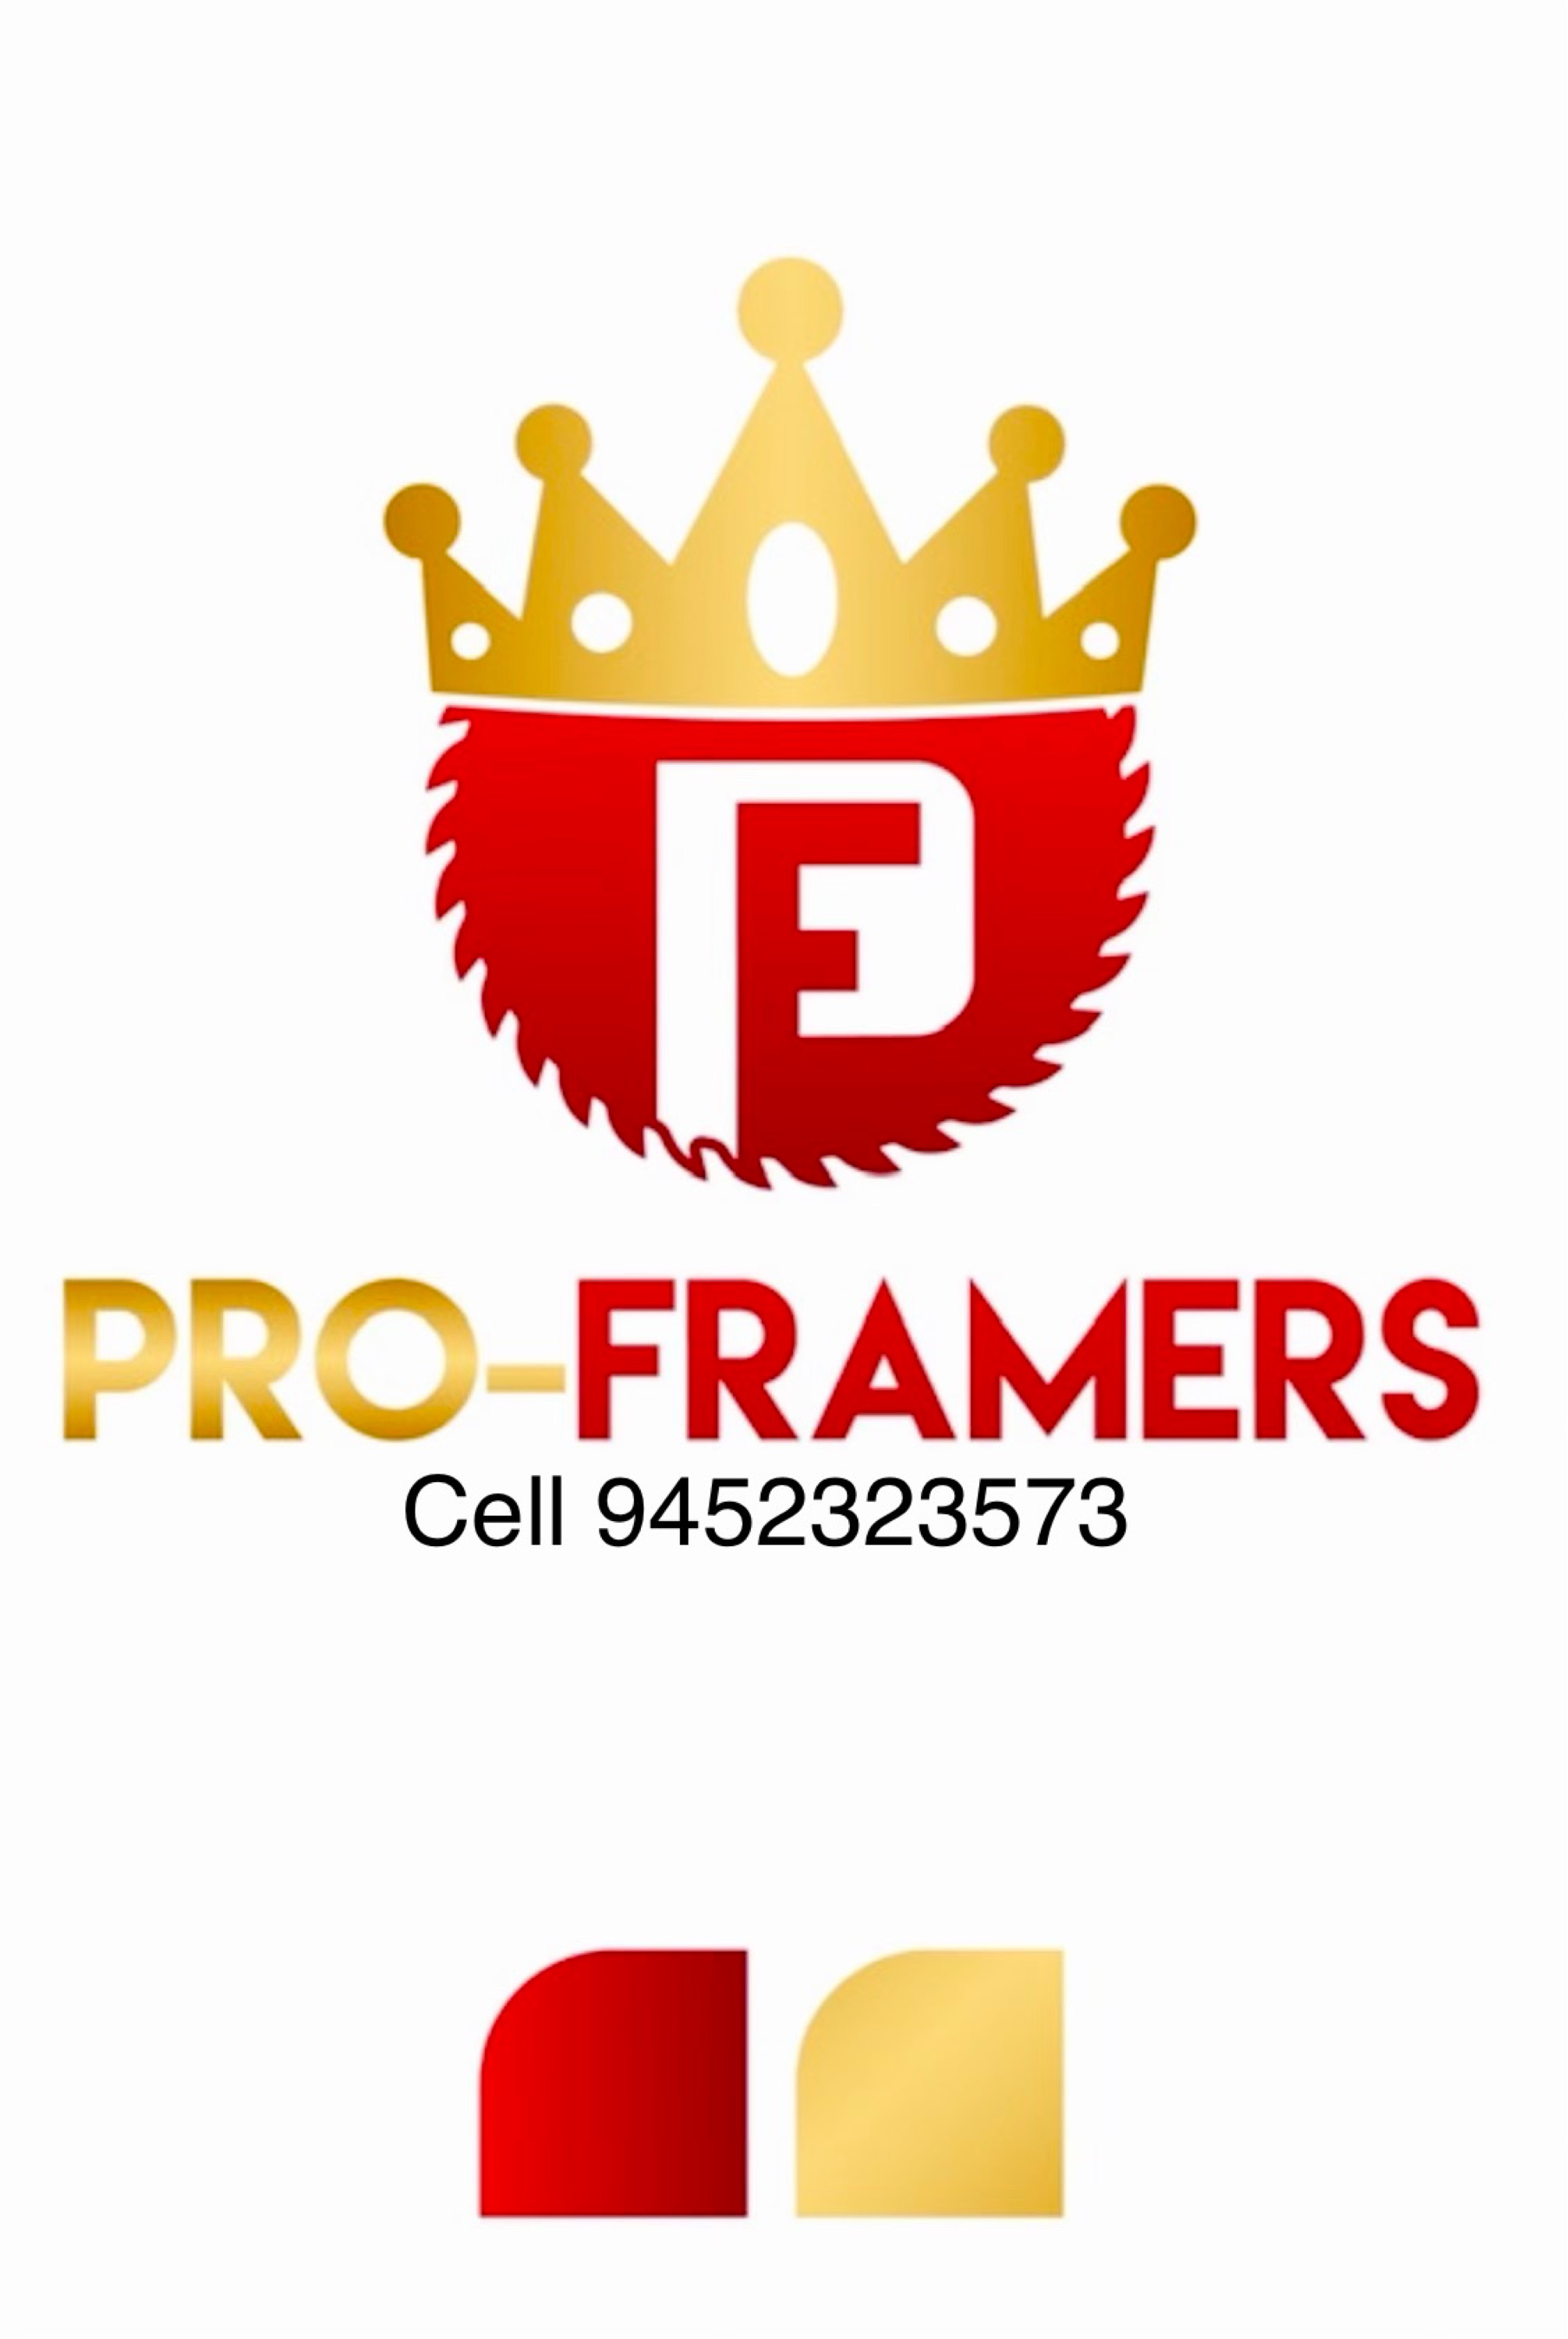 Pro-Framers Logo